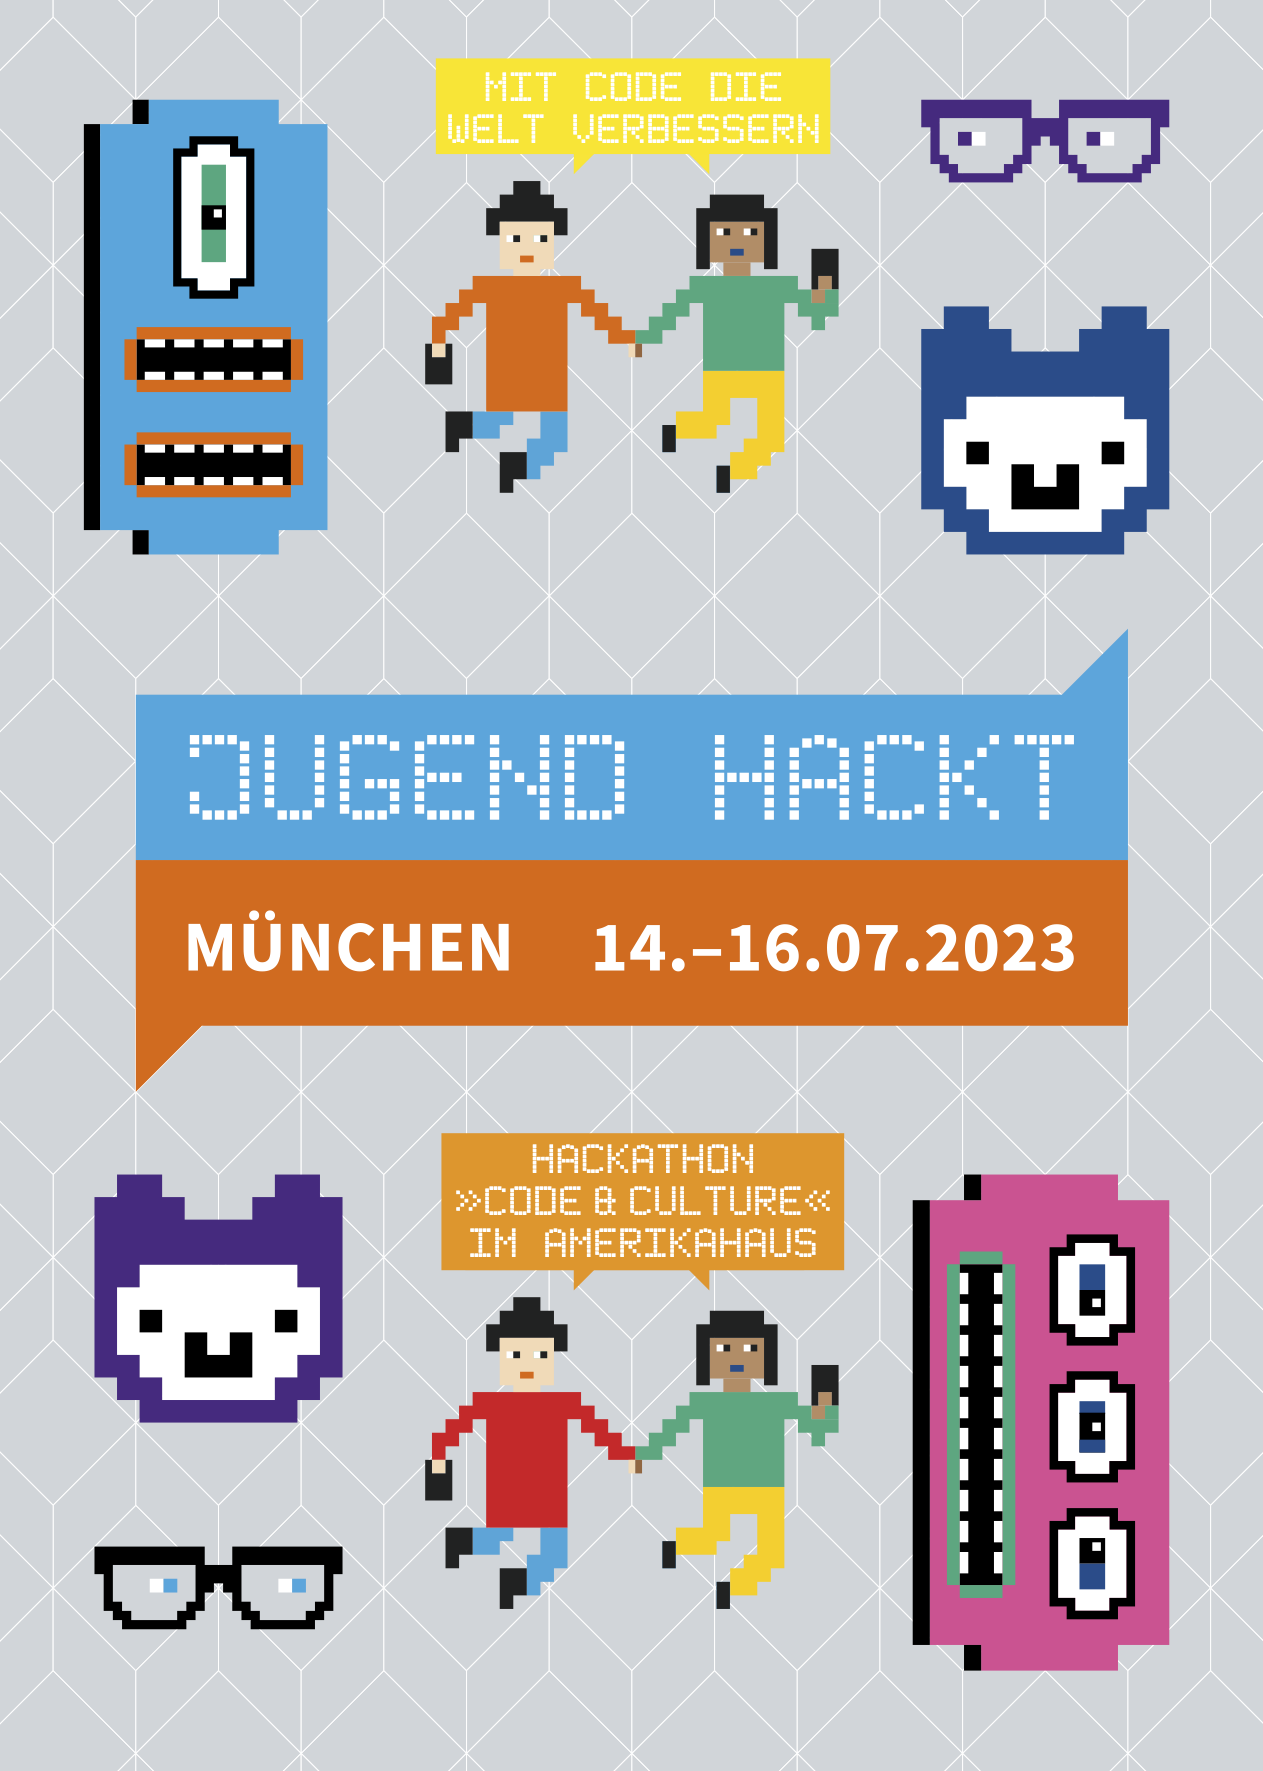 Titelbild des diesjährigen Jugendhackathon mit Monstergesichtern und Kindern, die sich an den Händen halten in groben Pixeln